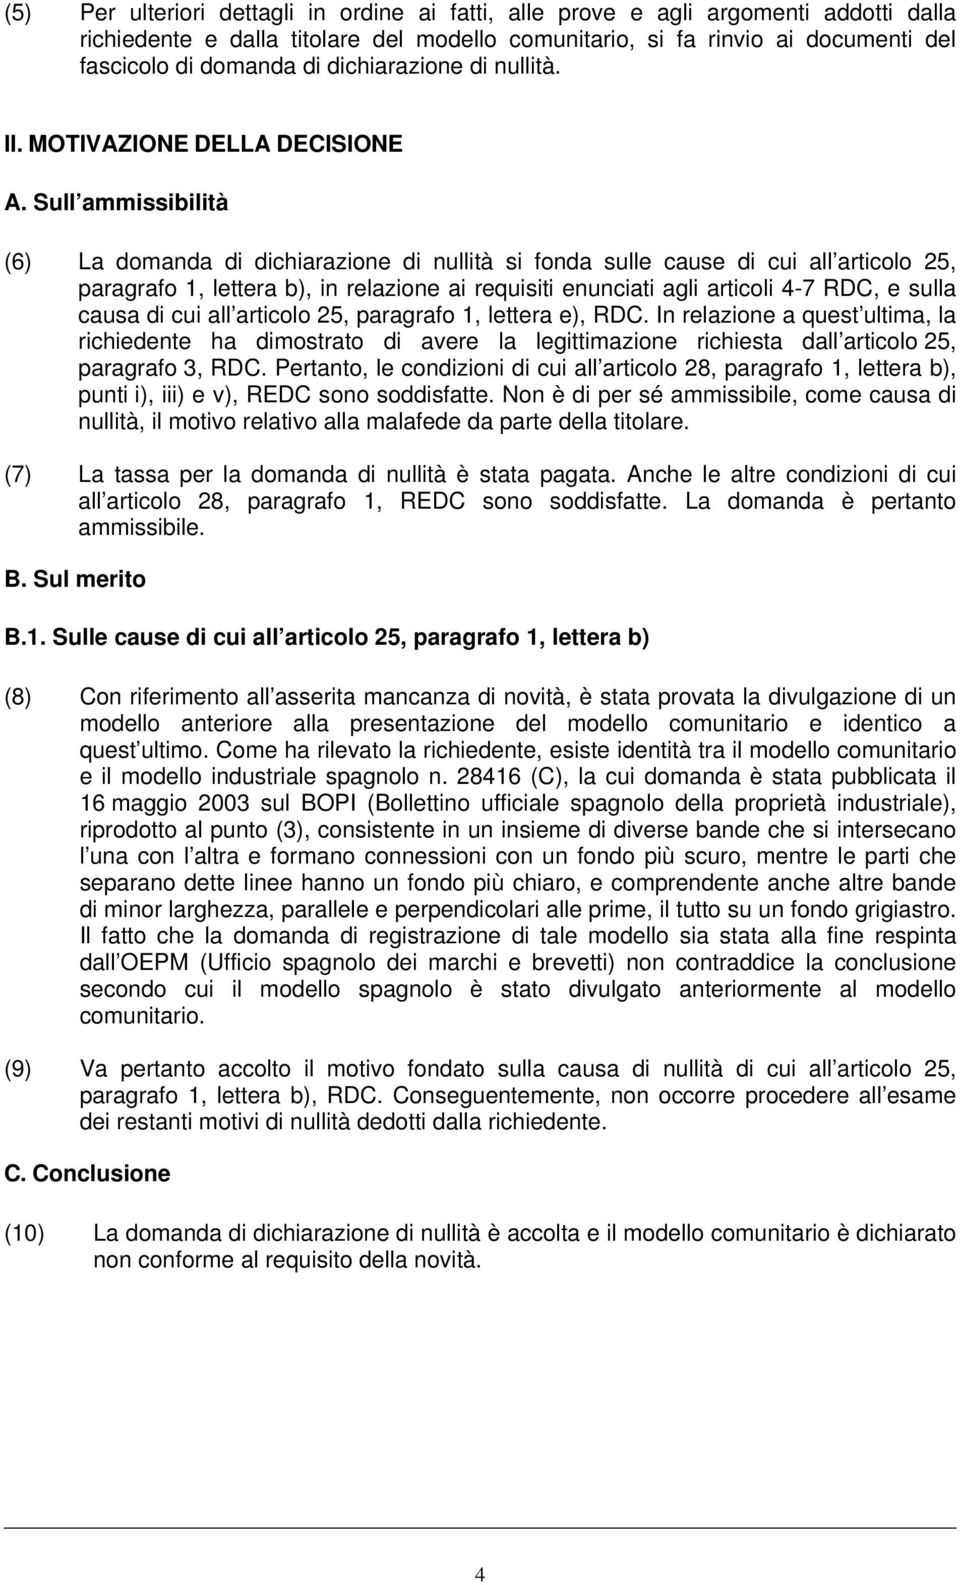 Sull ammissibilità (6) La domanda di dichiarazione di nullità si fonda sulle cause di cui all articolo 25, paragrafo 1, lettera b), in relazione ai requisiti enunciati agli articoli 4-7 RDC, e sulla